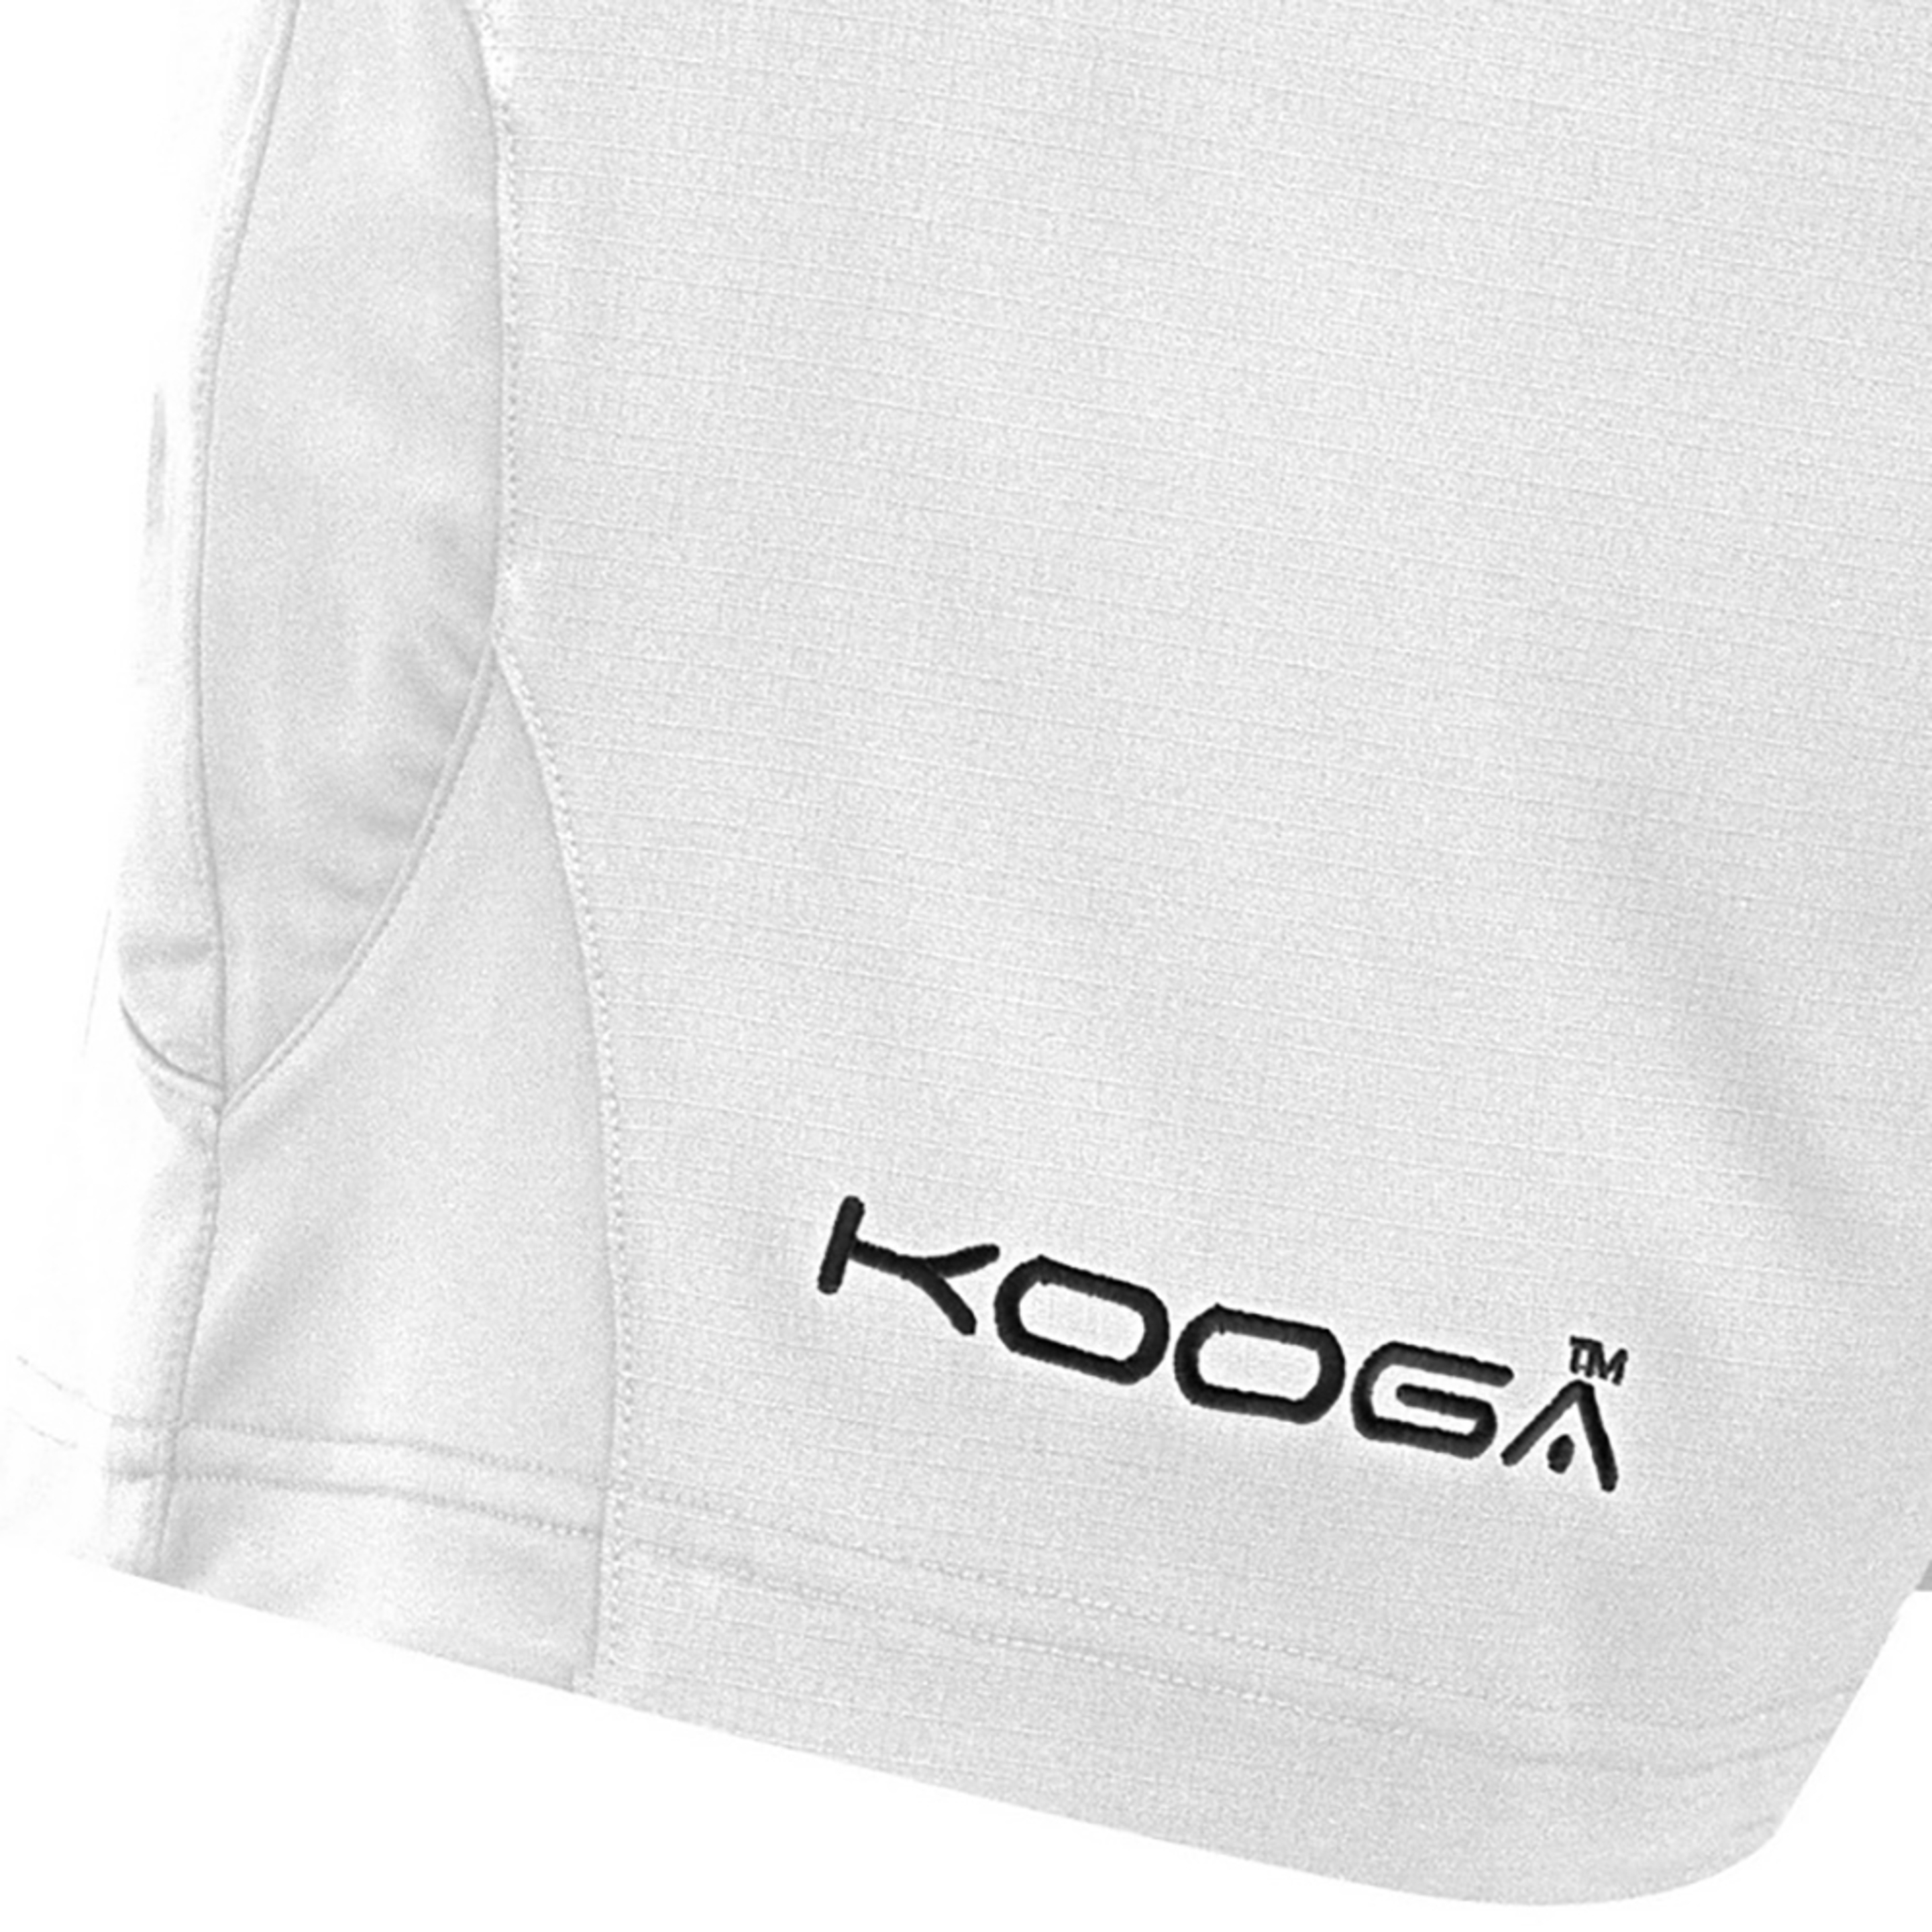 Pantalones De Deporte Rugby Modelo Antipodean Ii Para Niños Kooga (Blanco)